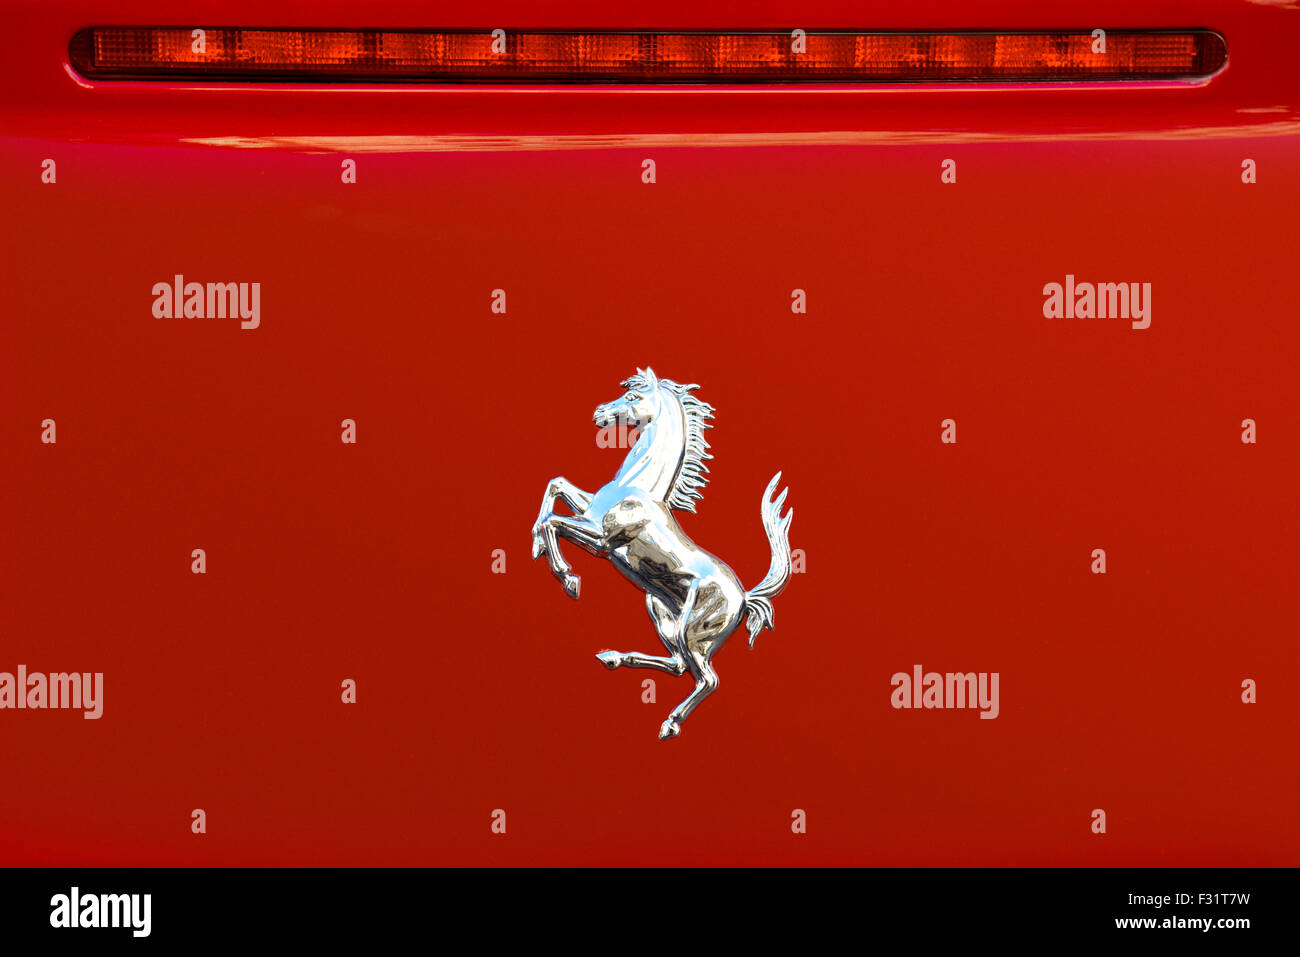 Prag, Tschechische Republik - 4. Juni 2015: das Cavallino Rampante, Symbol der Ferrari auf rote Luxus-Auto am Boulevard der Stadt in Prag. Stockfoto